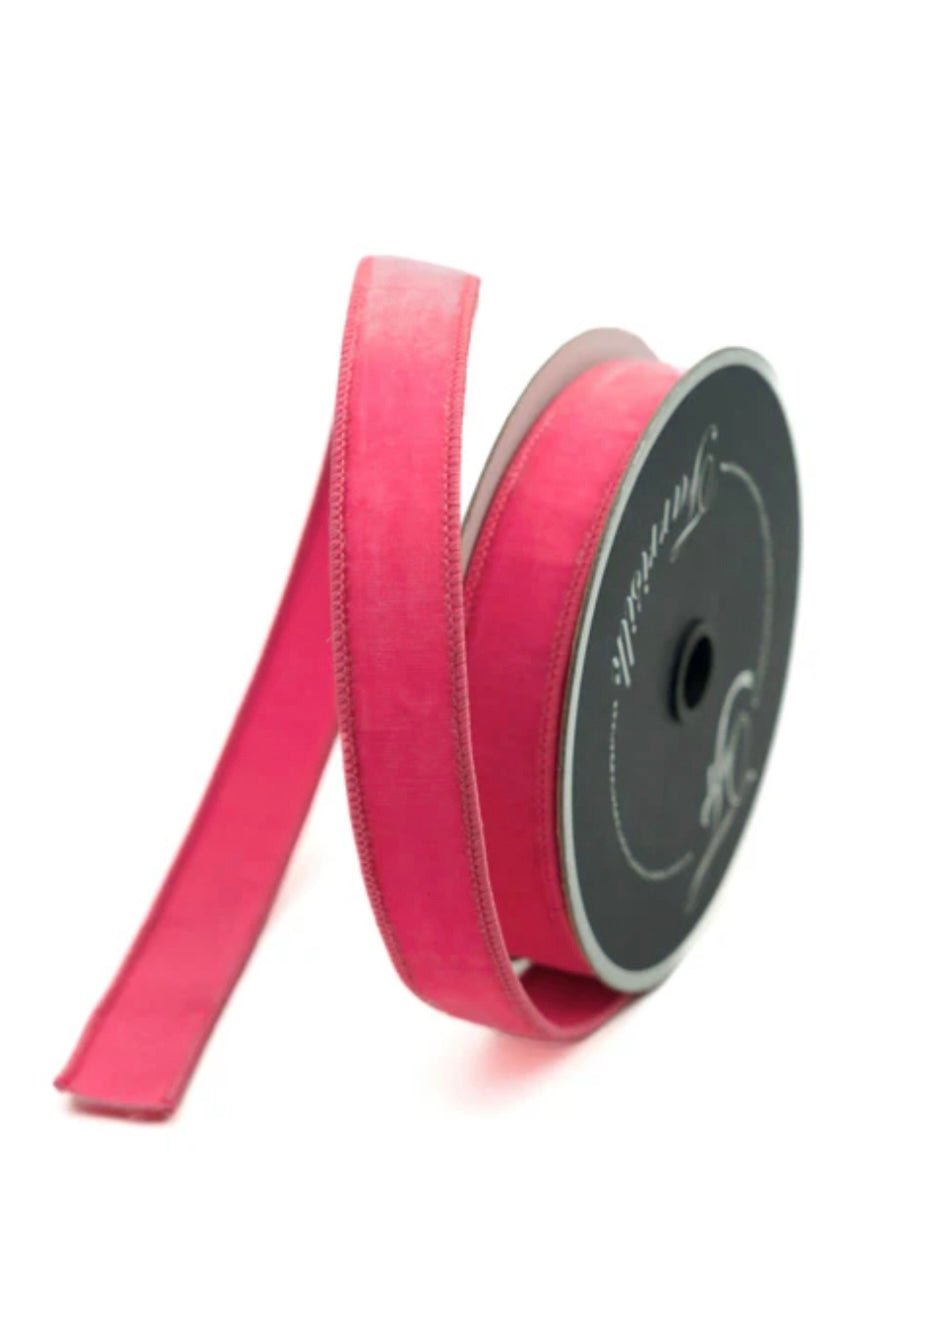 Farrisilk bubblegum pink plush velvet luster 1” wired ribbon - Greenery MarketRibbons & TrimRG008-74